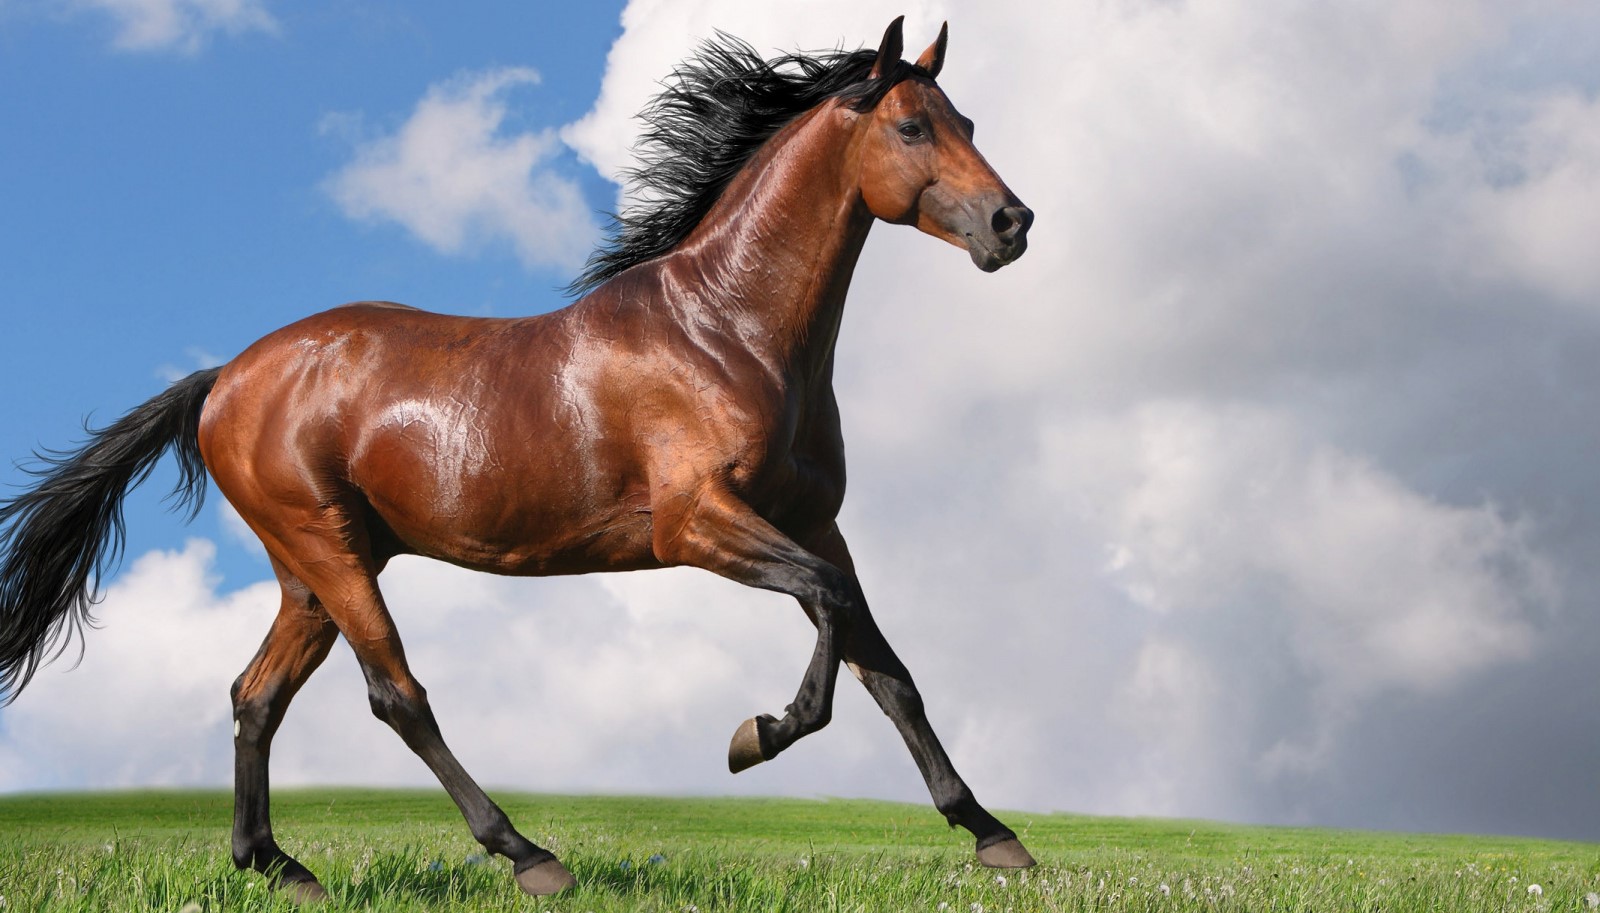 Рыжая лошадь: как называется, описание масти, подходящее имя, фото